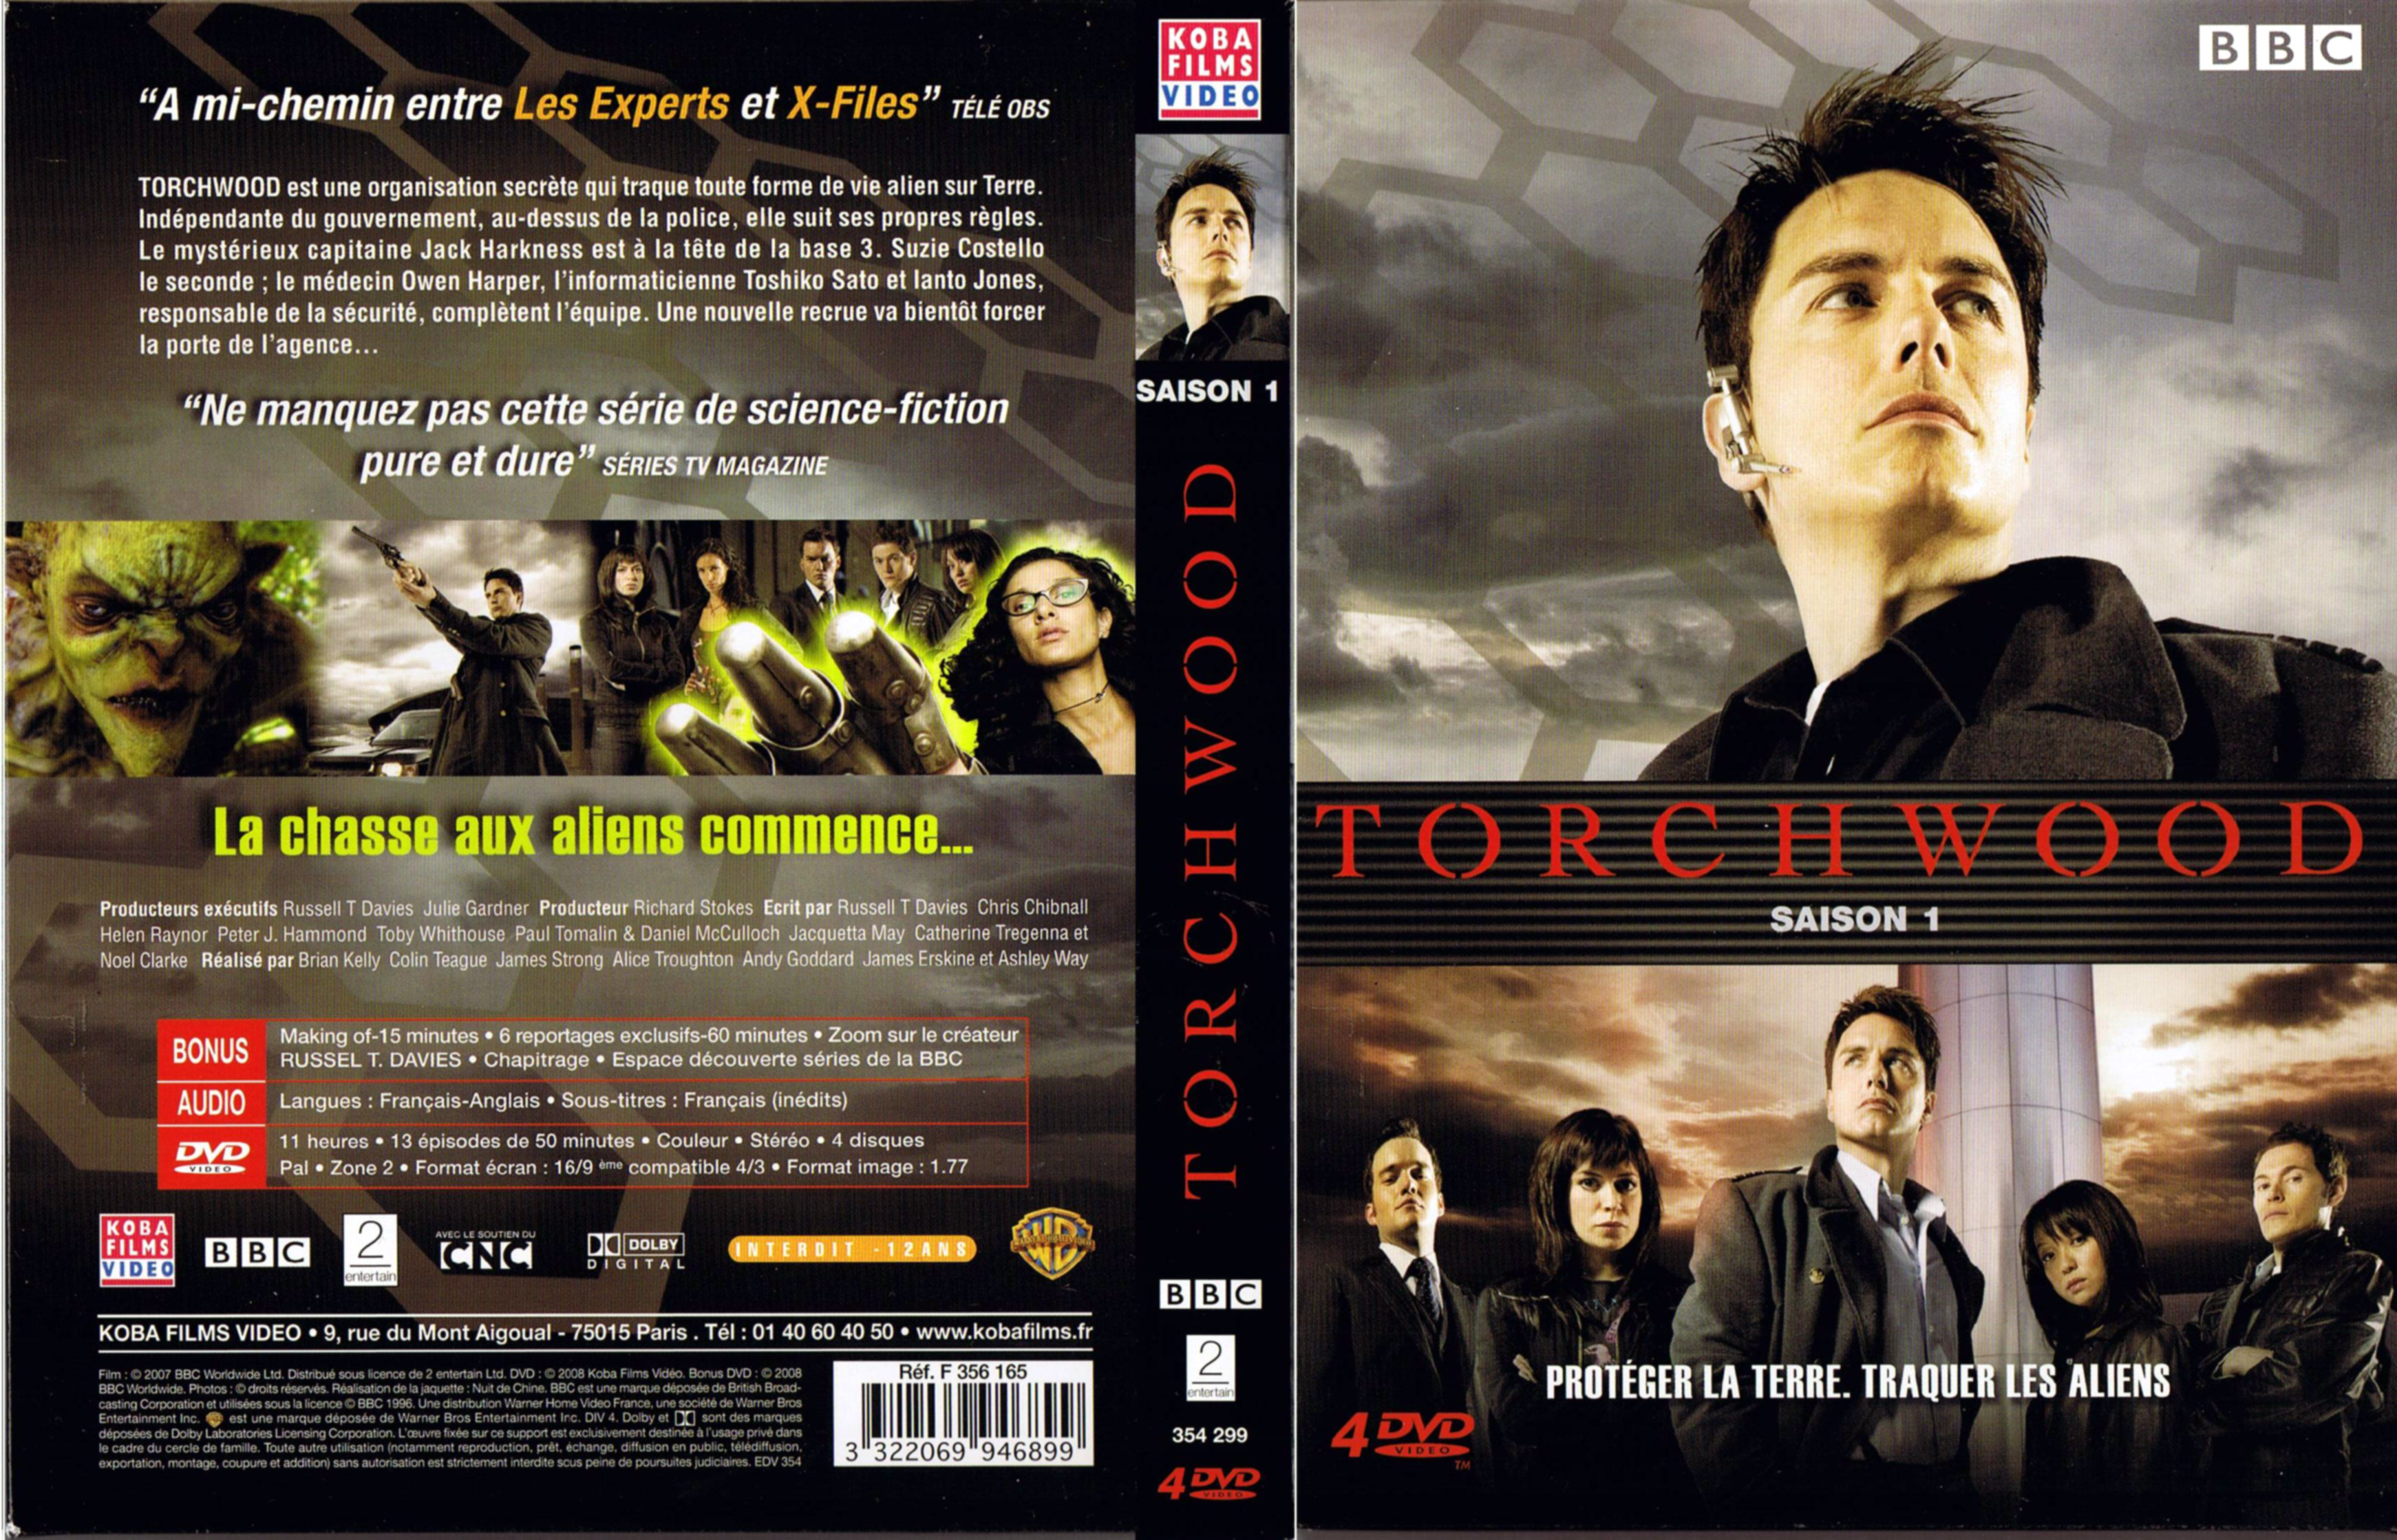 Jaquette DVD Torchwood Saison 1 COFFRET